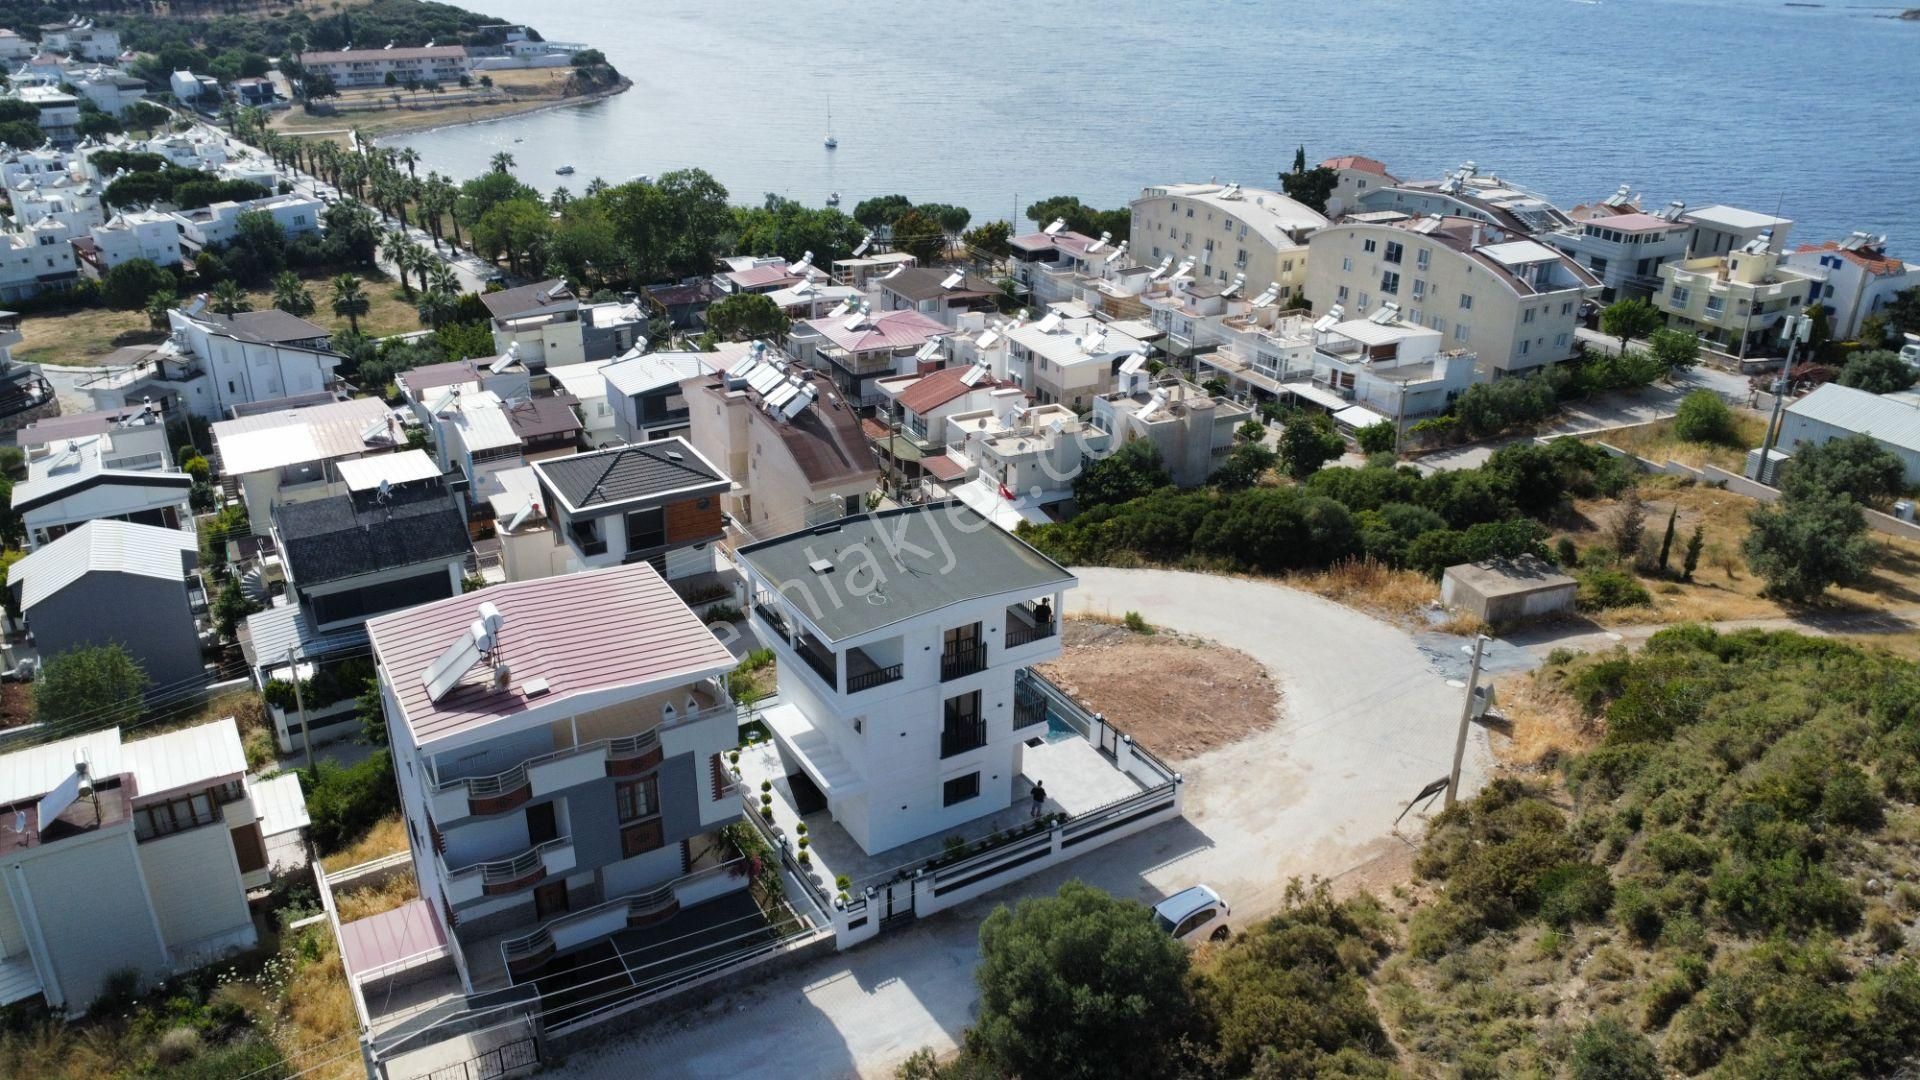 Didim Mavişehir Satılık Villa Didim Mevişehirde Denize 150 Metre Mesafede Satılık Lüx Akıllı Consept 3+1 Müstakil Havuzlu Villa